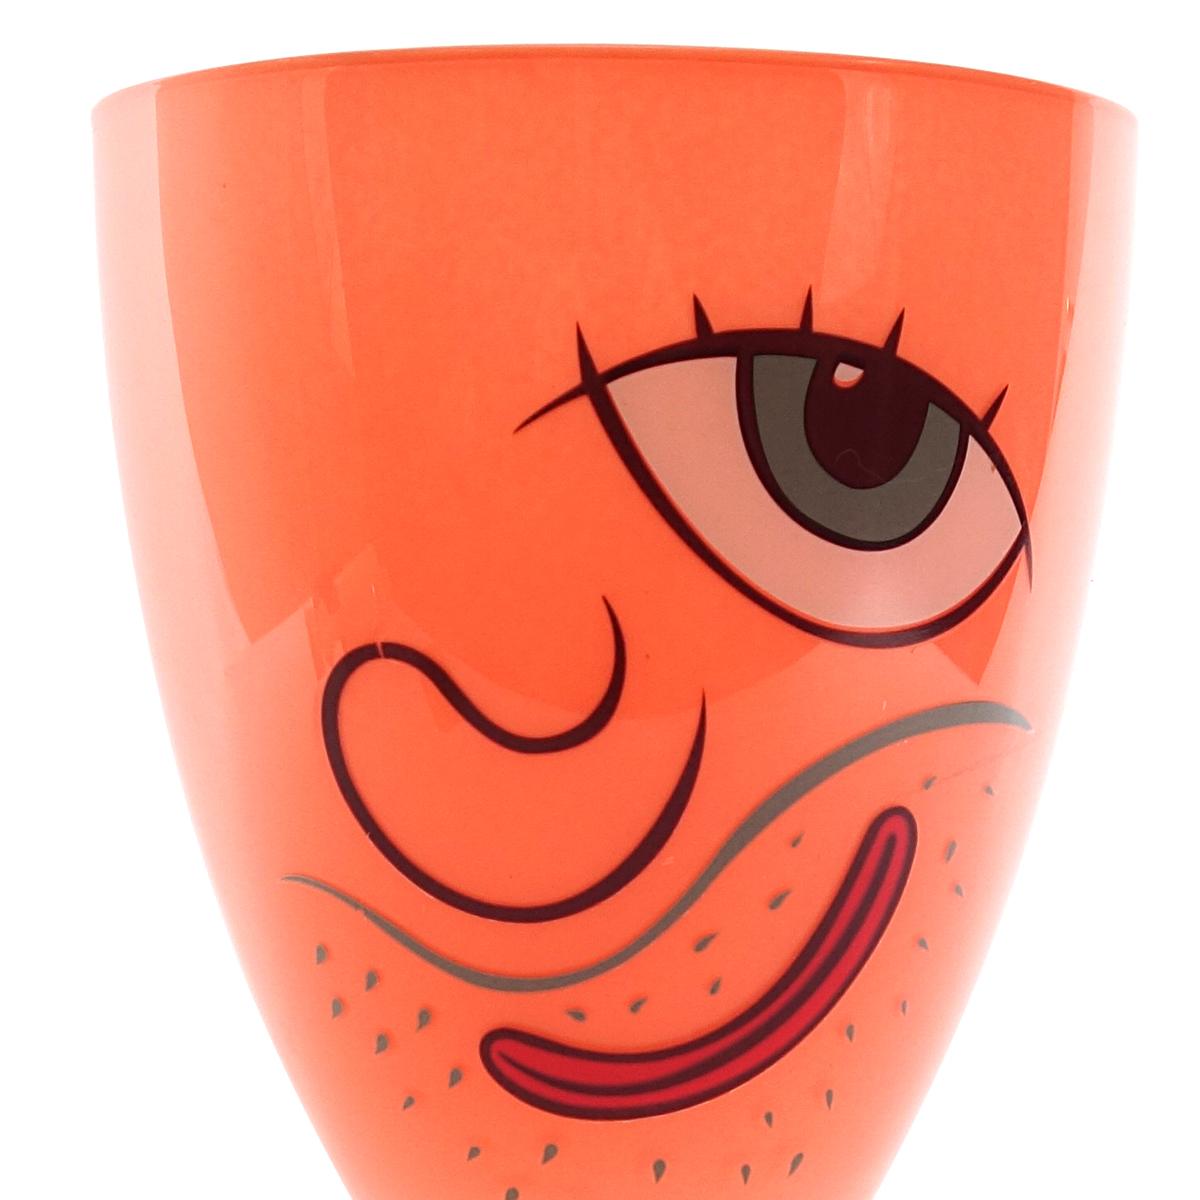 Vase en verre joyeux conçu par Massimo Giacon pour la Collection Vis-à-vis de Ritzenhoff, 1999.

Le visage chauve et rude nous regarde d'un air à la fois provocateur et amical. L'absence du deuxième œil lui confère une touche surréaliste. Les